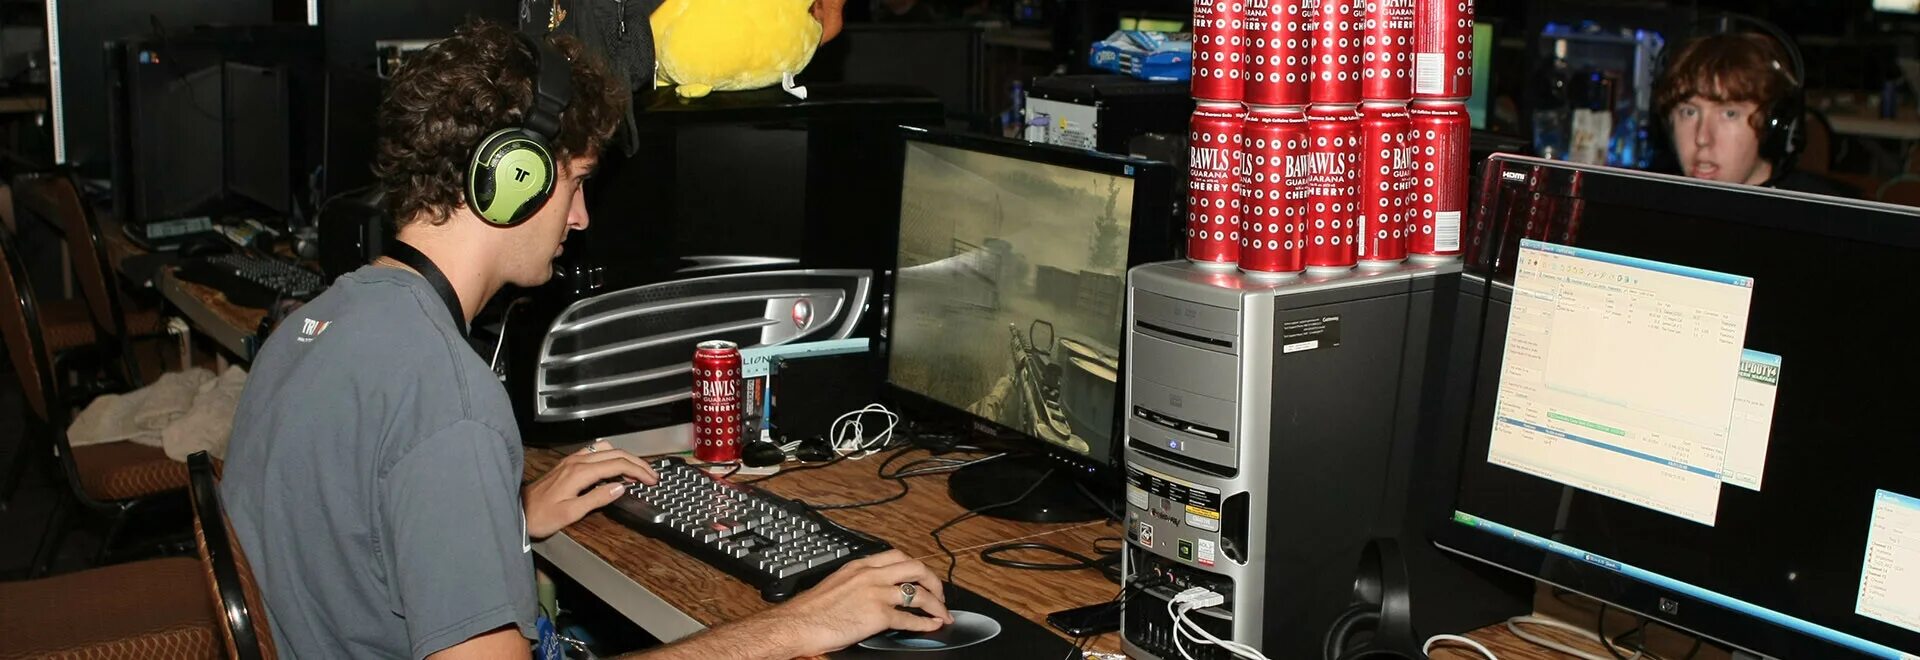 ПК геймер. Геймер фото. Компьютер 2009. Игровые компы 2010 года.